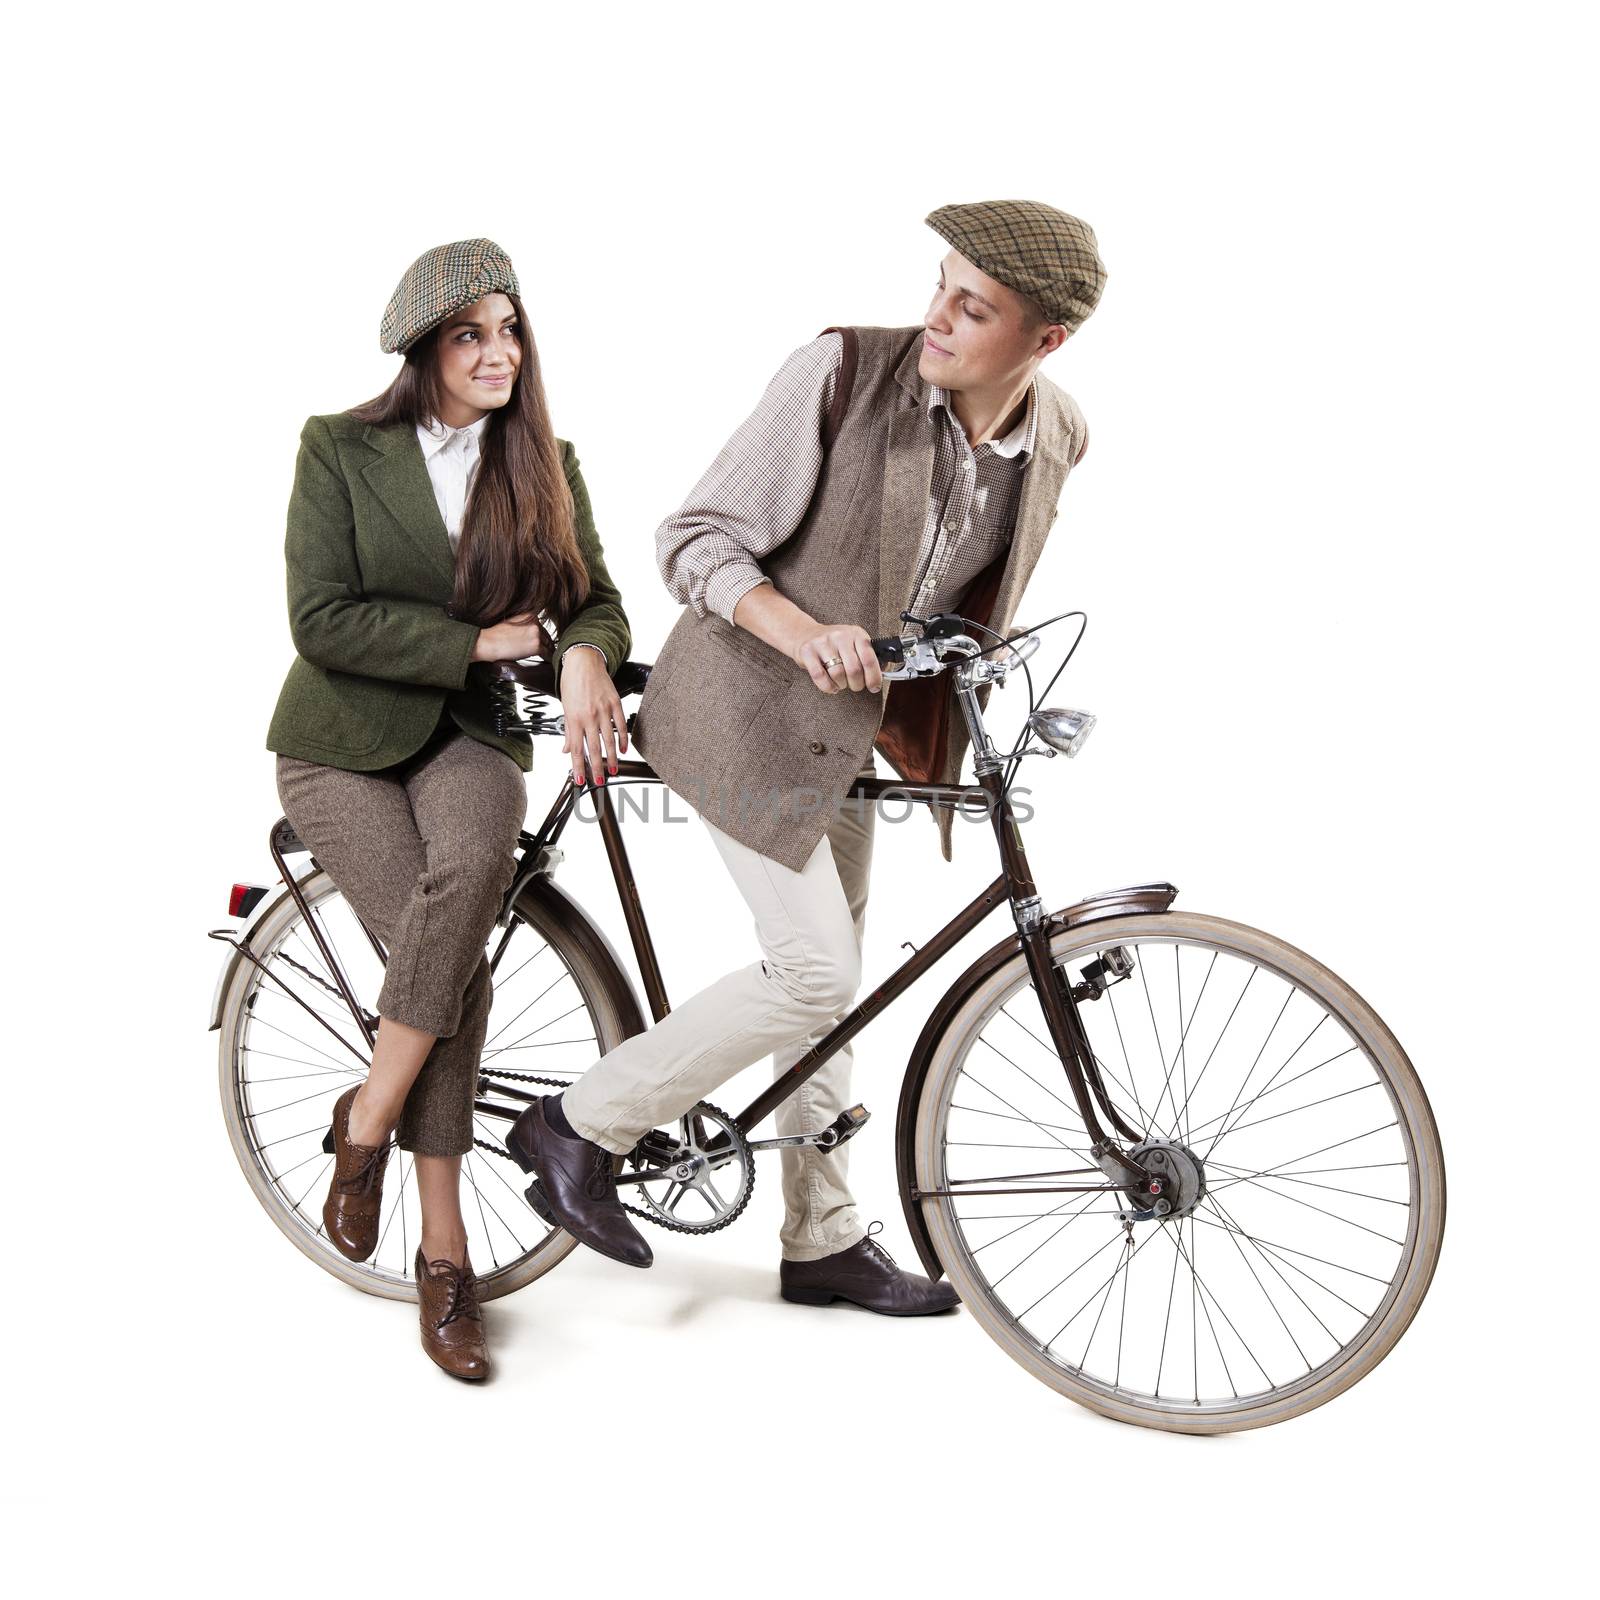 Vintage dressed couple sitting on retro bike